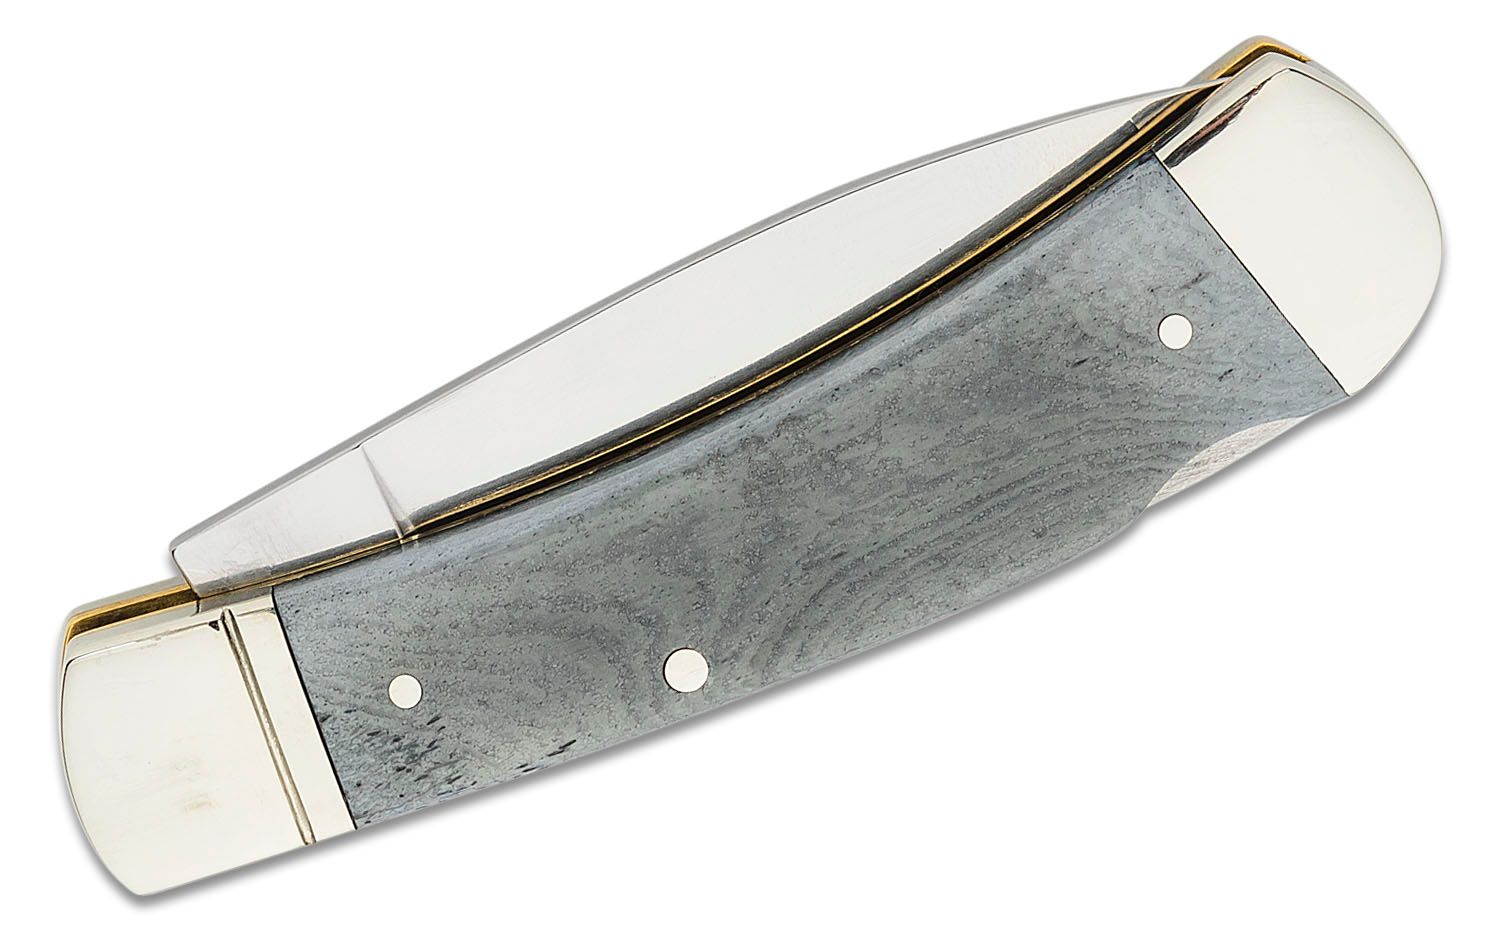 Boker Lockback Knife 110815 - D2 Steel Blade - KNIVES PLUS ®